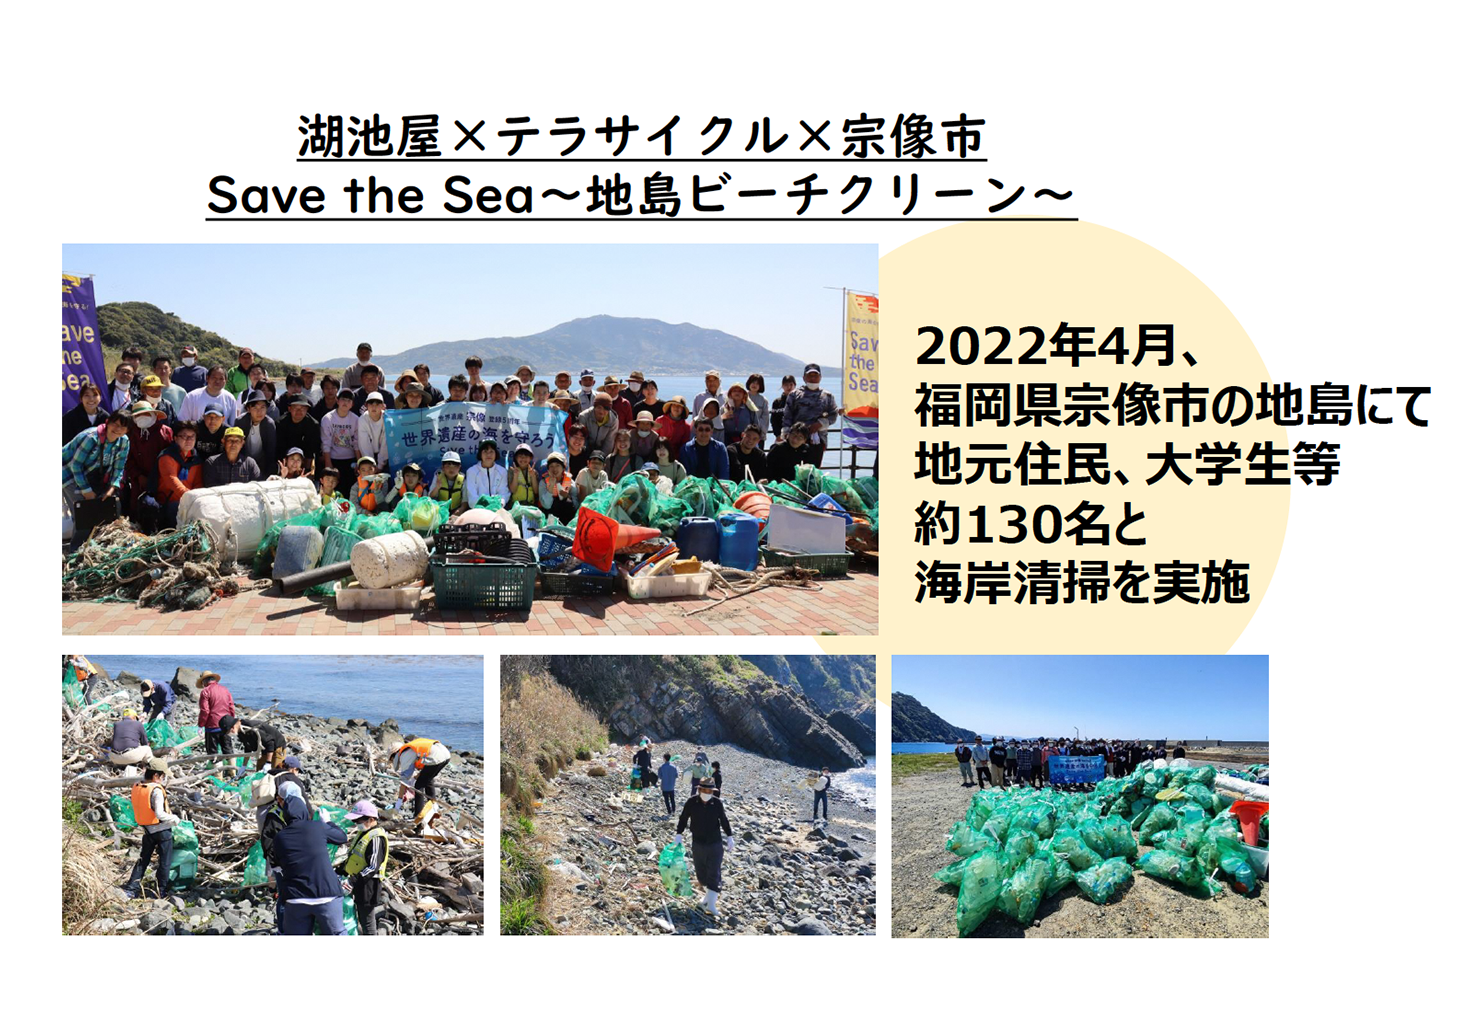 2022年4月に地島で地元住民と大学生らが海岸清掃を行いました